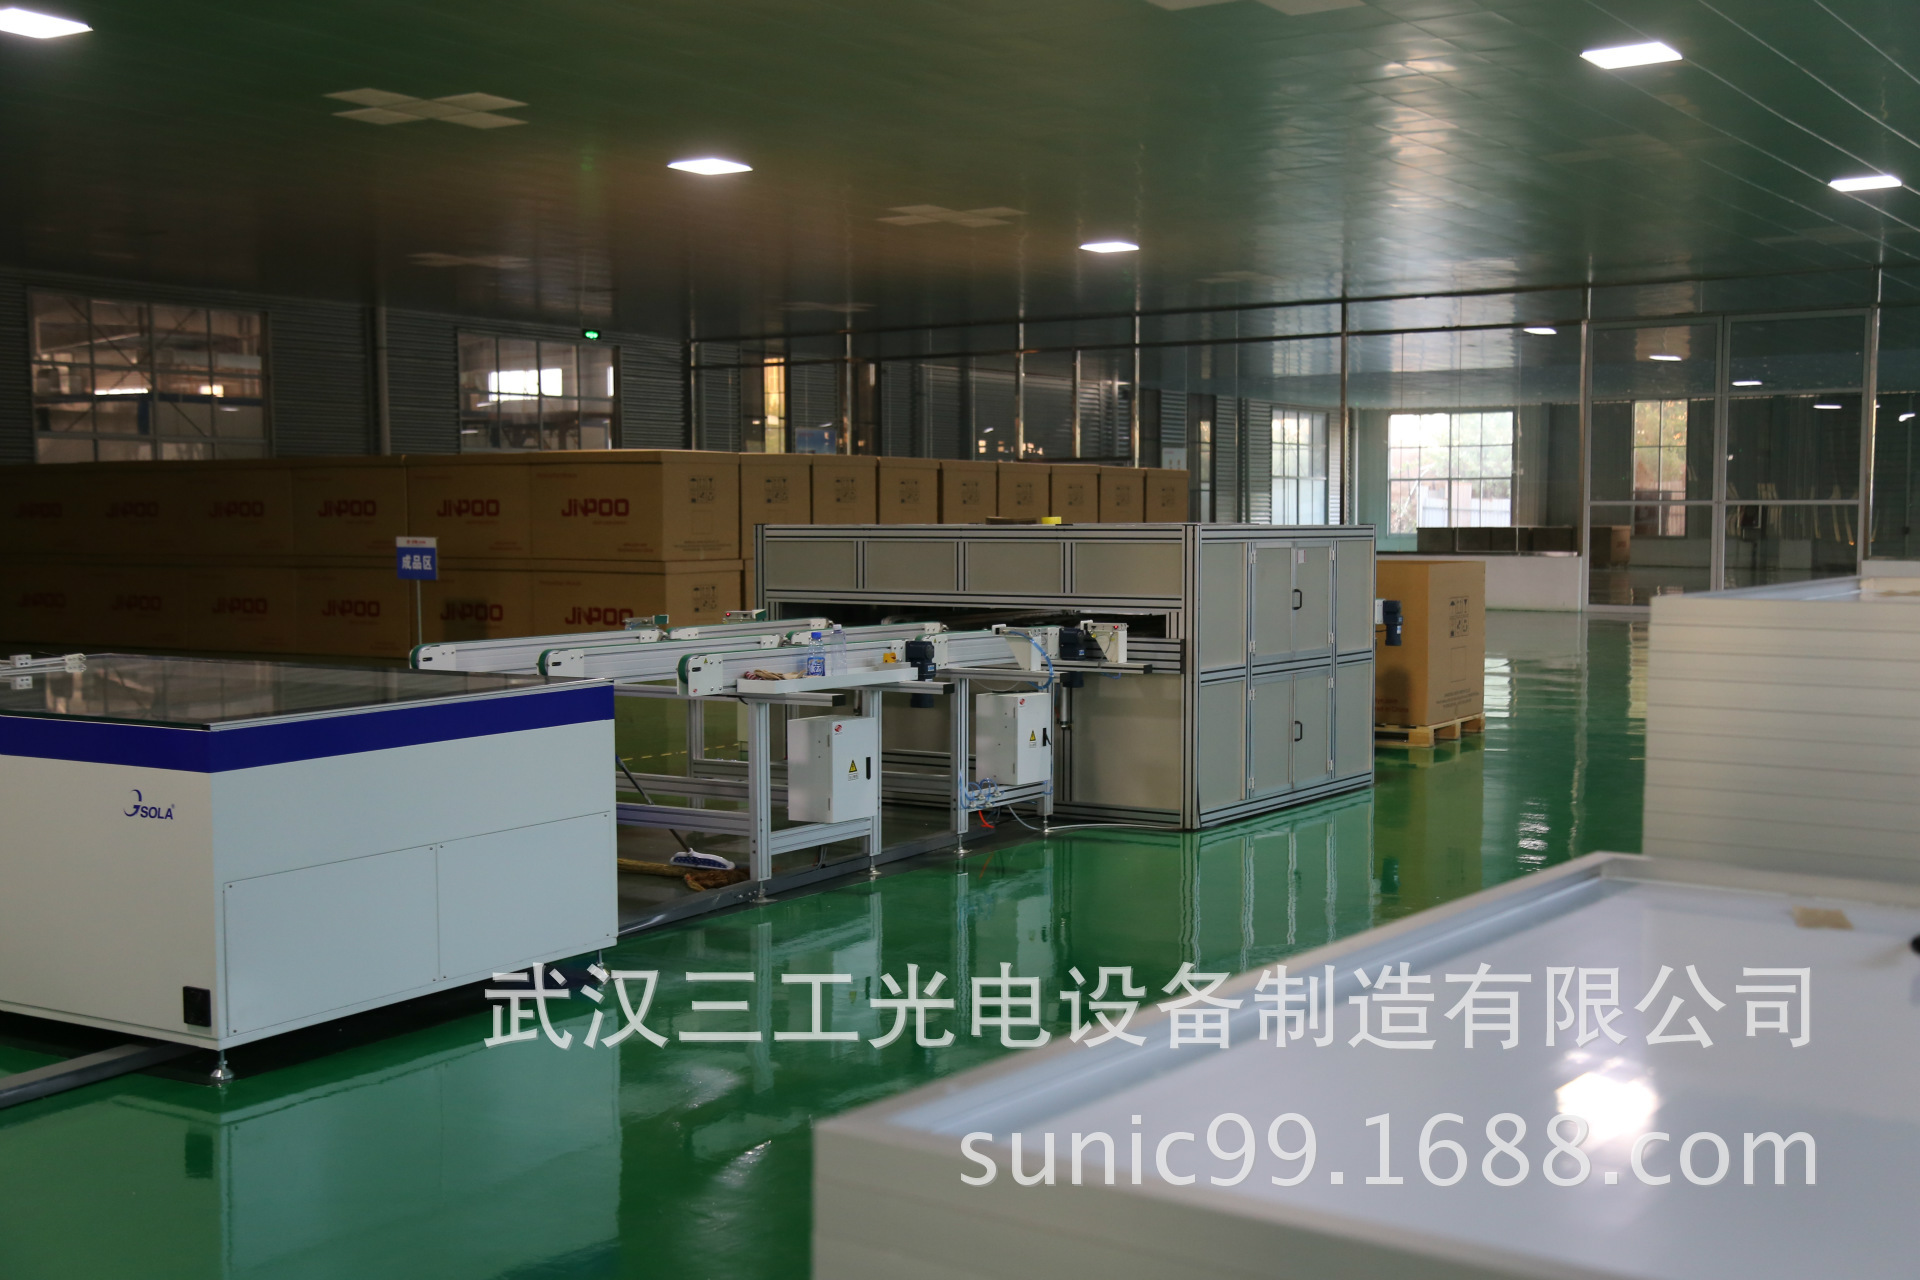 海南省太阳能路灯电池板生产设备|自动化光伏组件生产线示例图12